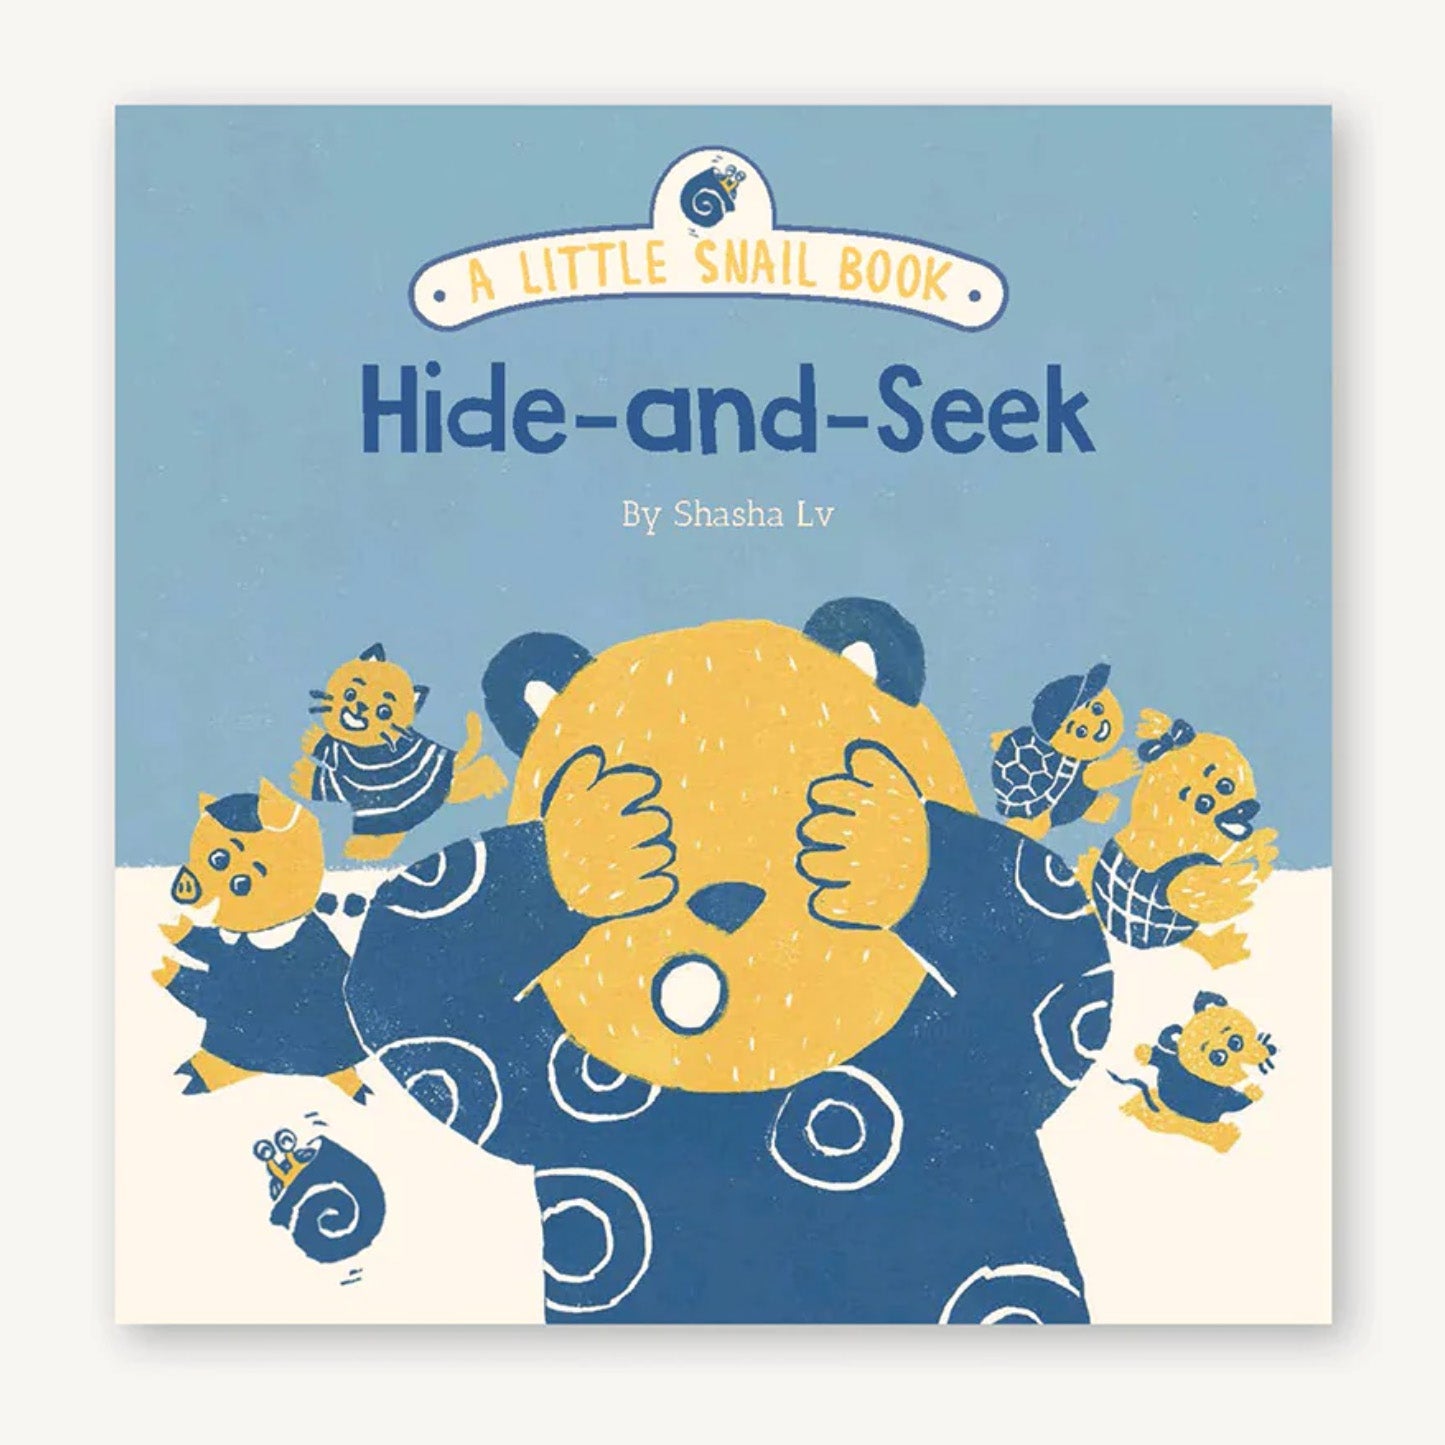 a little snail book: hide-and-seek